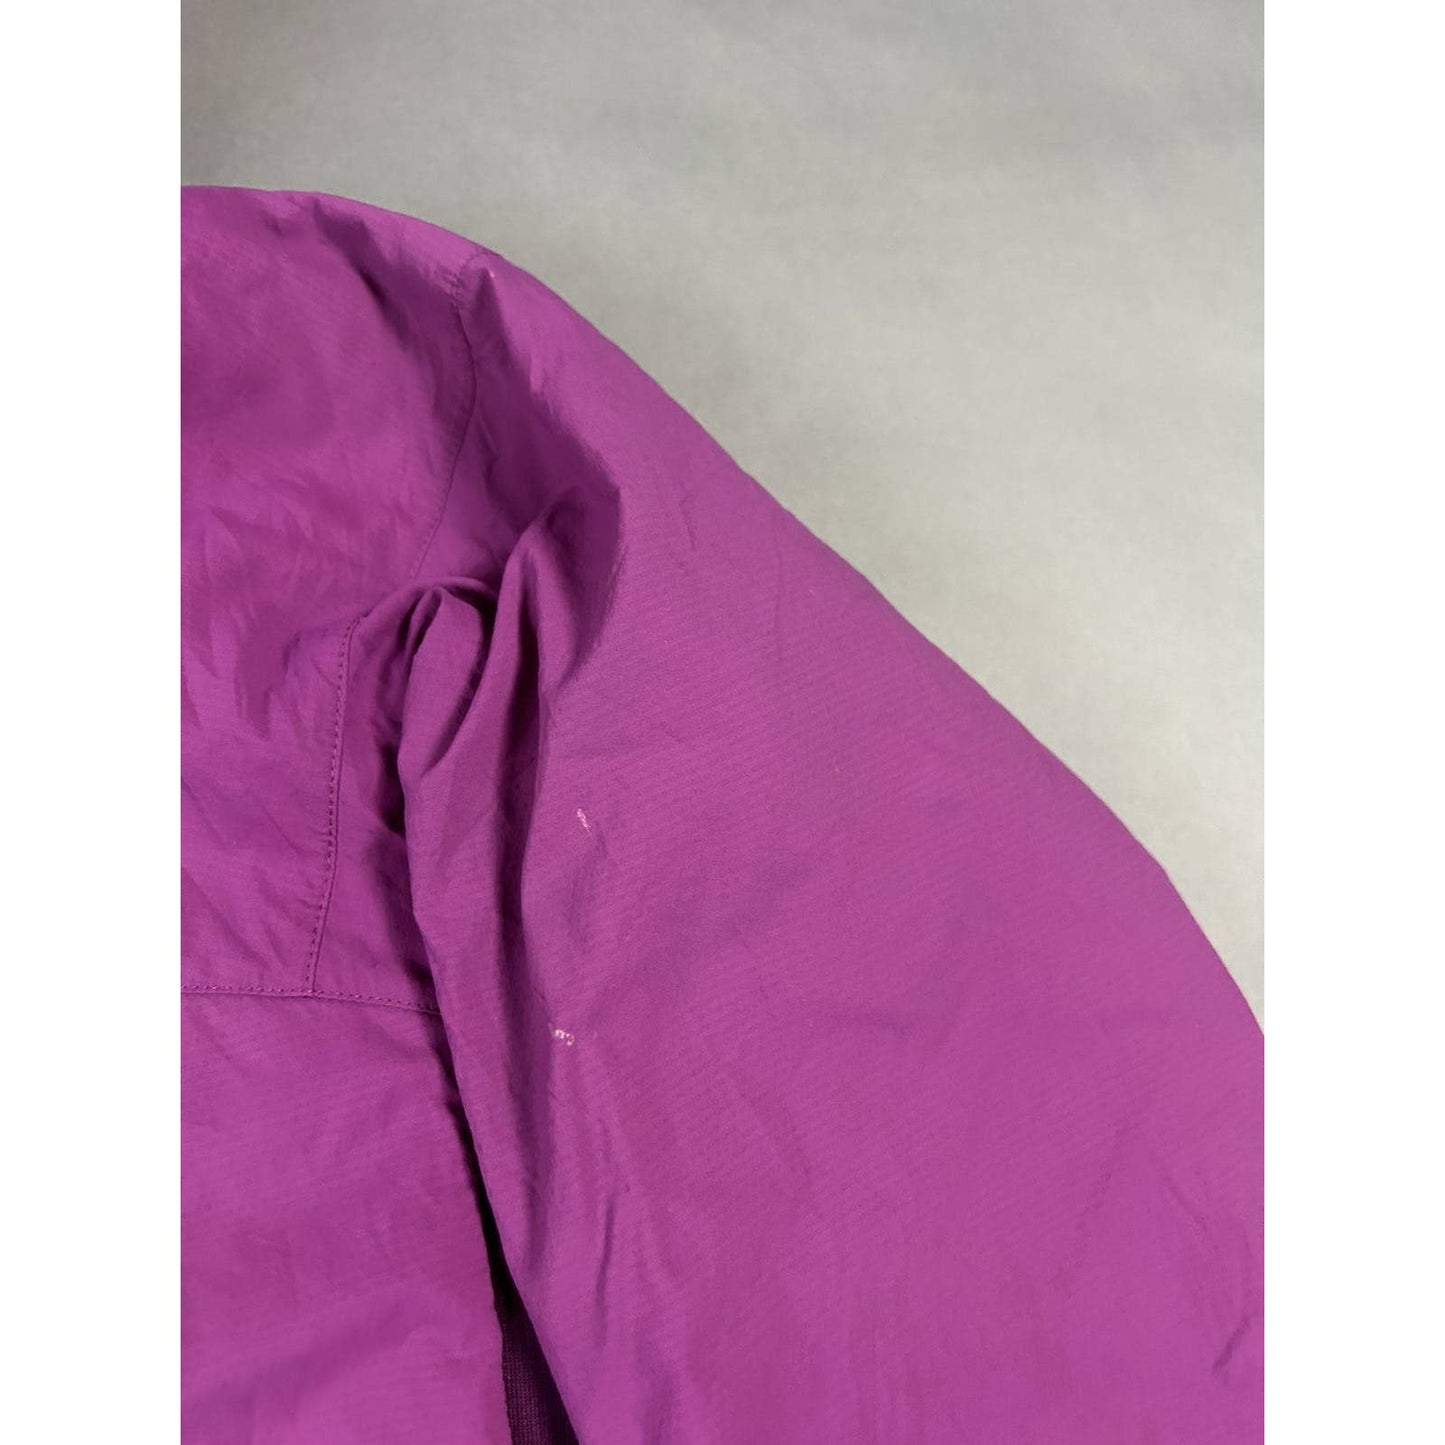 Arc’teryx jacket pink Atom LT hoody